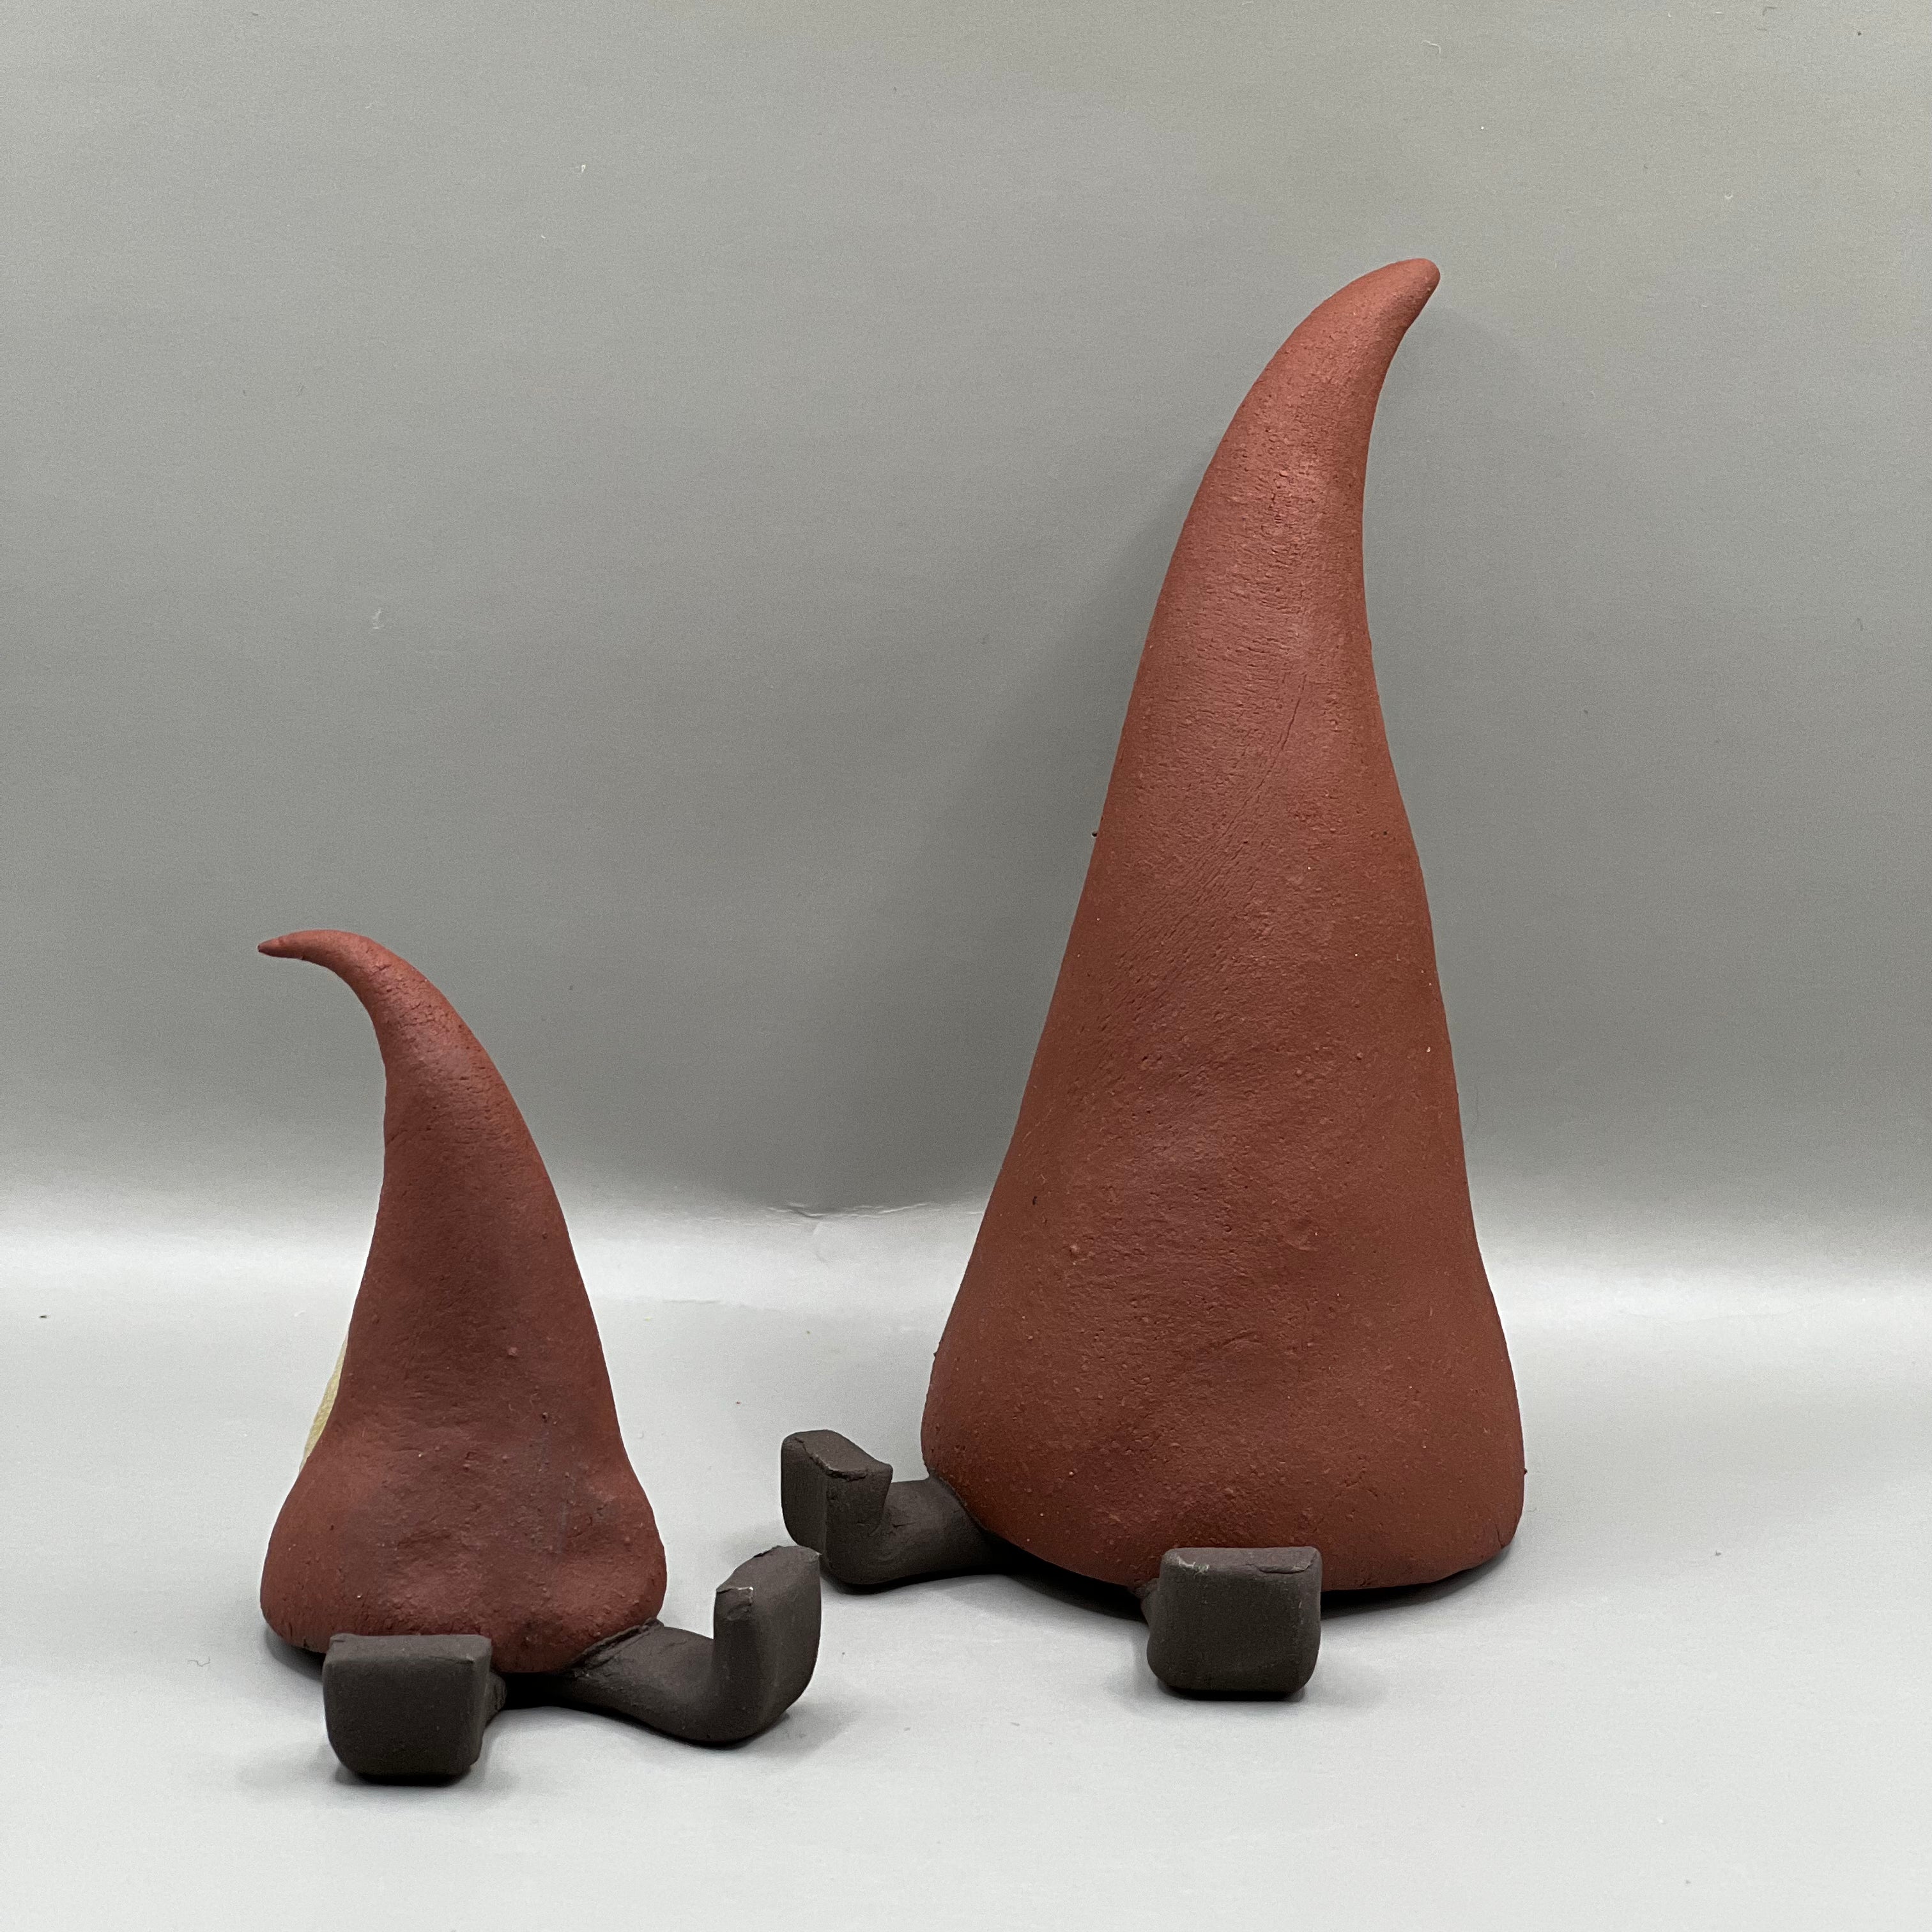 Nissehue / Stor / Keramik